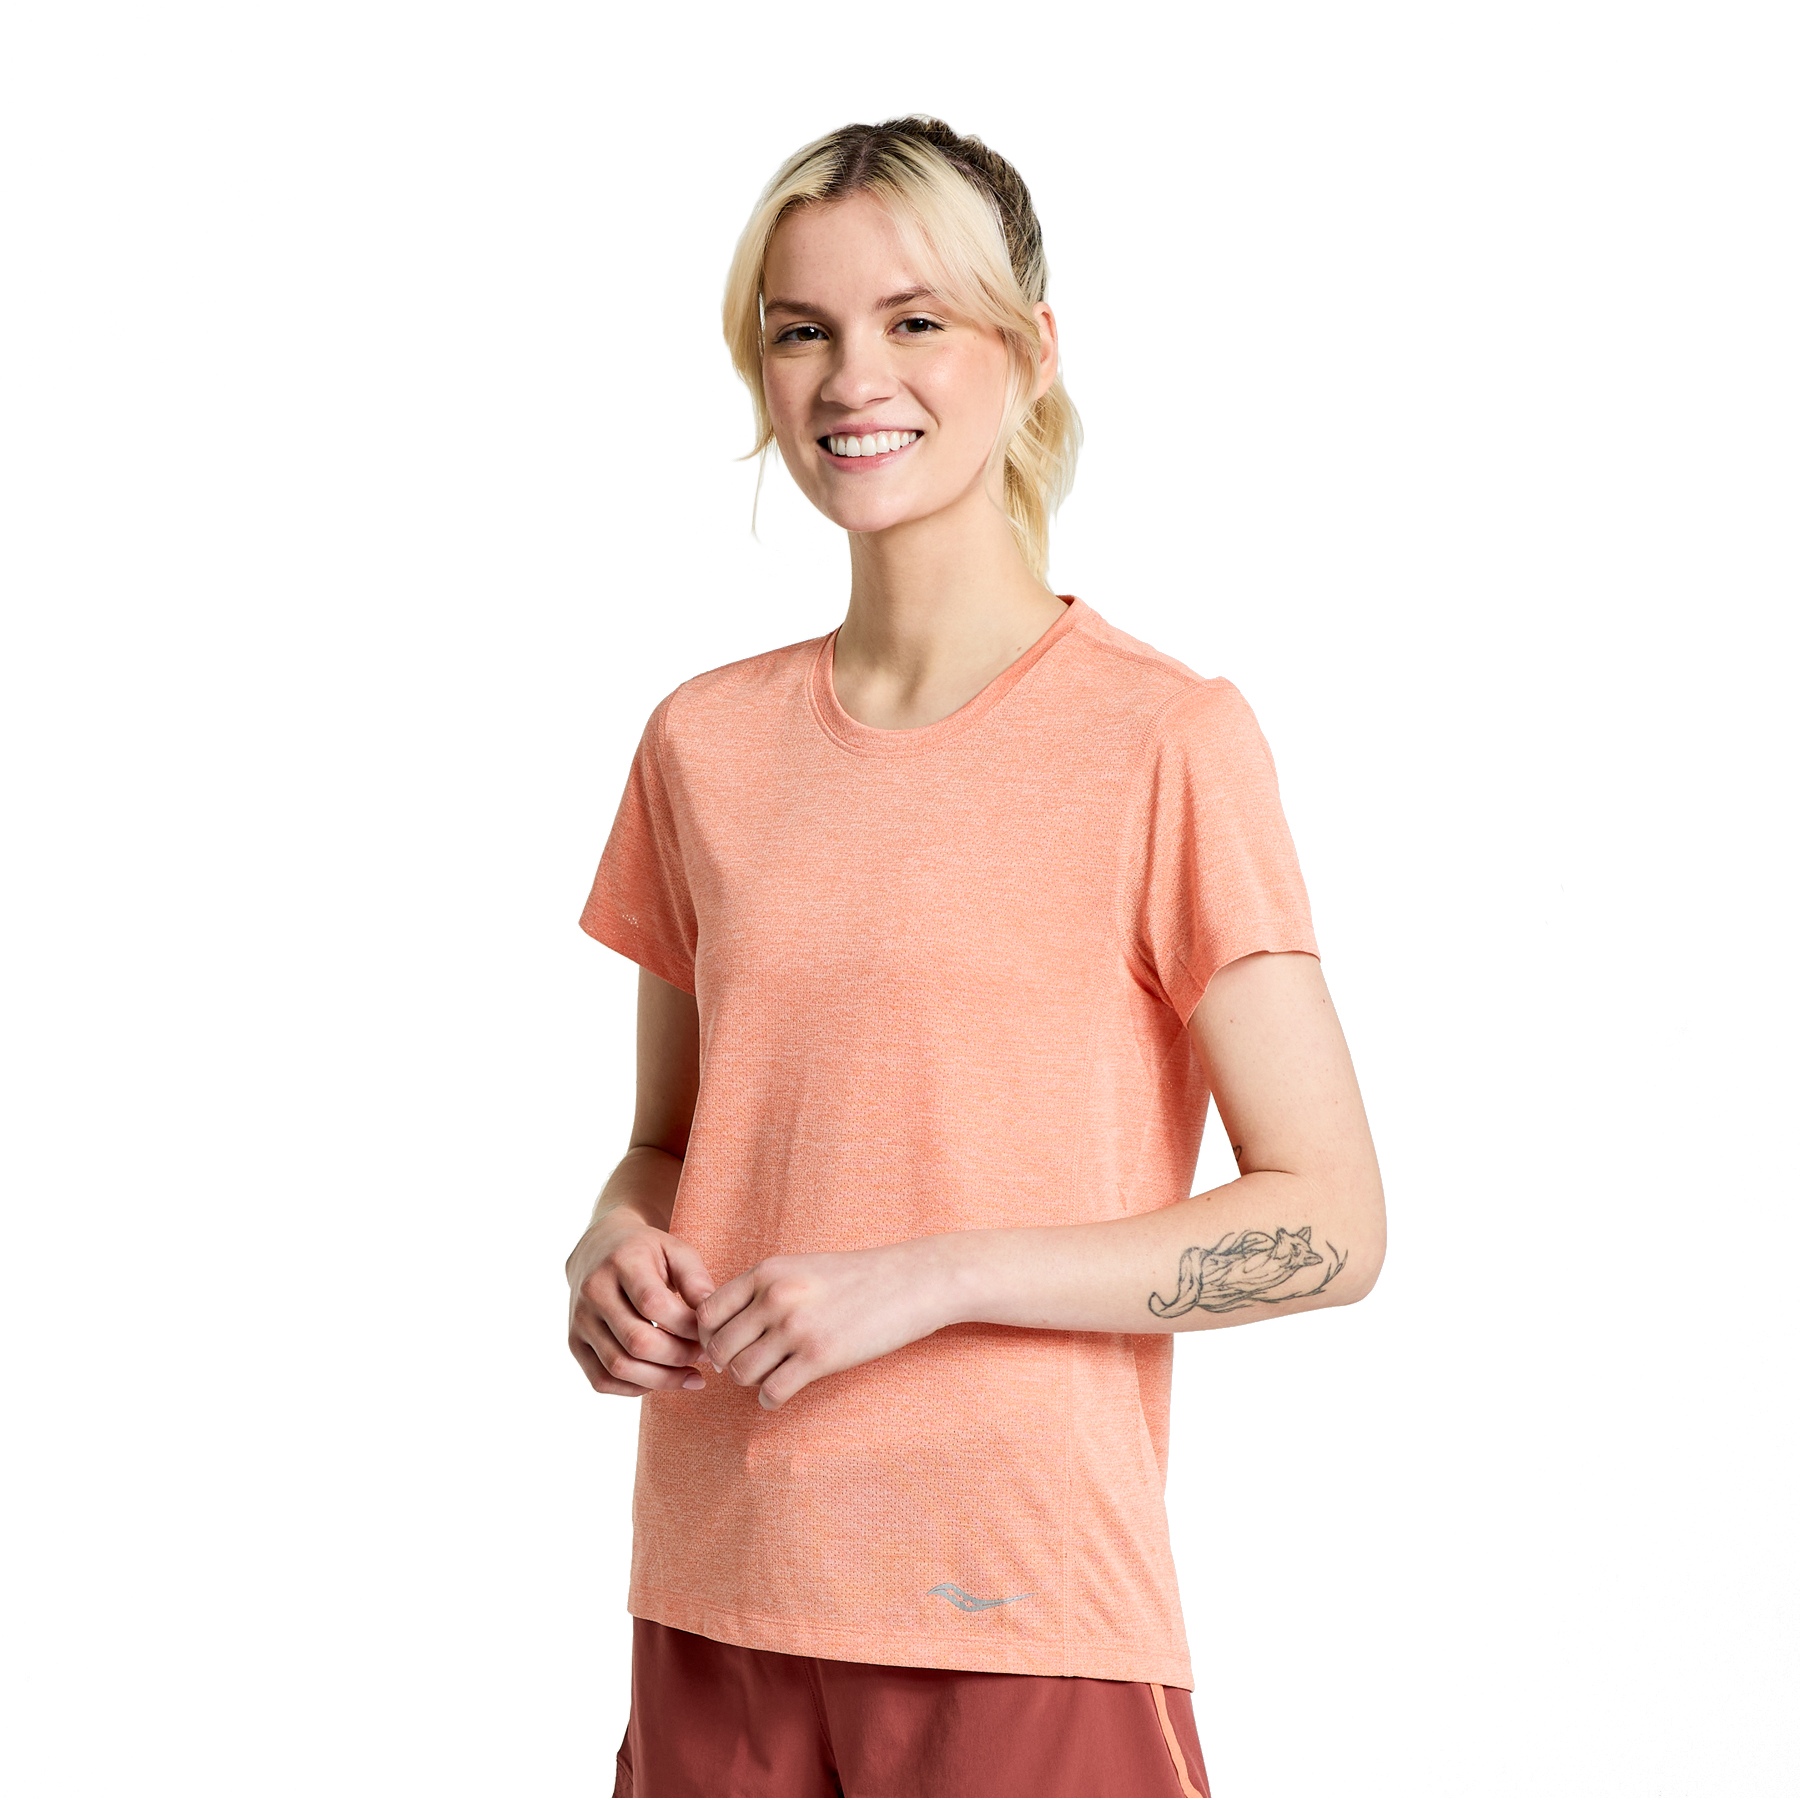 Produktbild von Saucony Stopwatch Damen Kurzarm Shirt - zenith heather